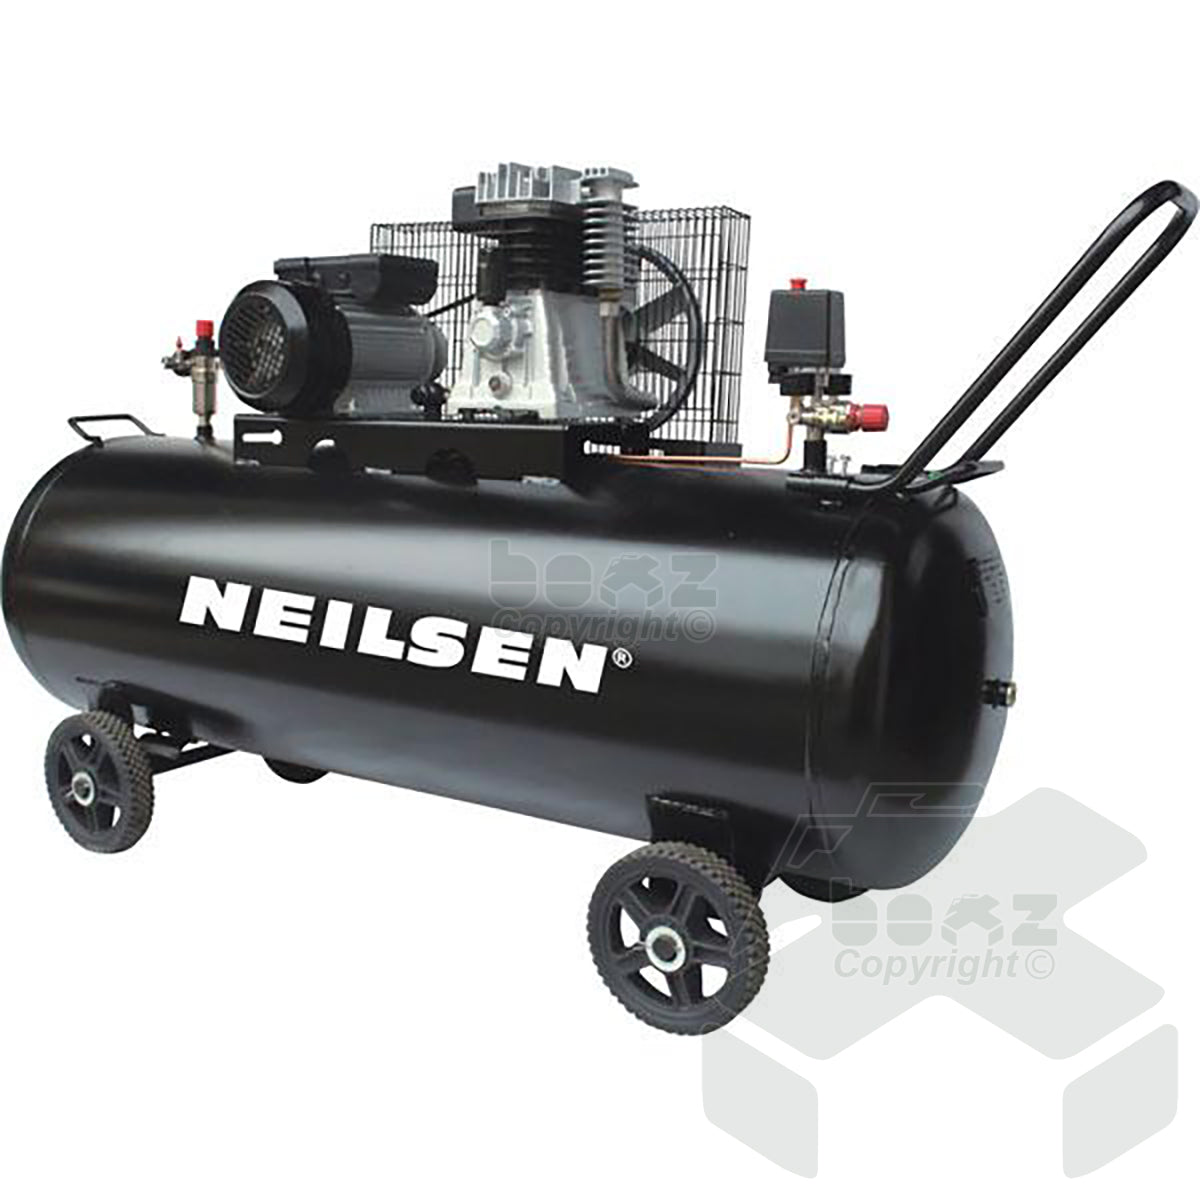 Neilsen 230l 230v 3hp Belt-driven Air Compressor